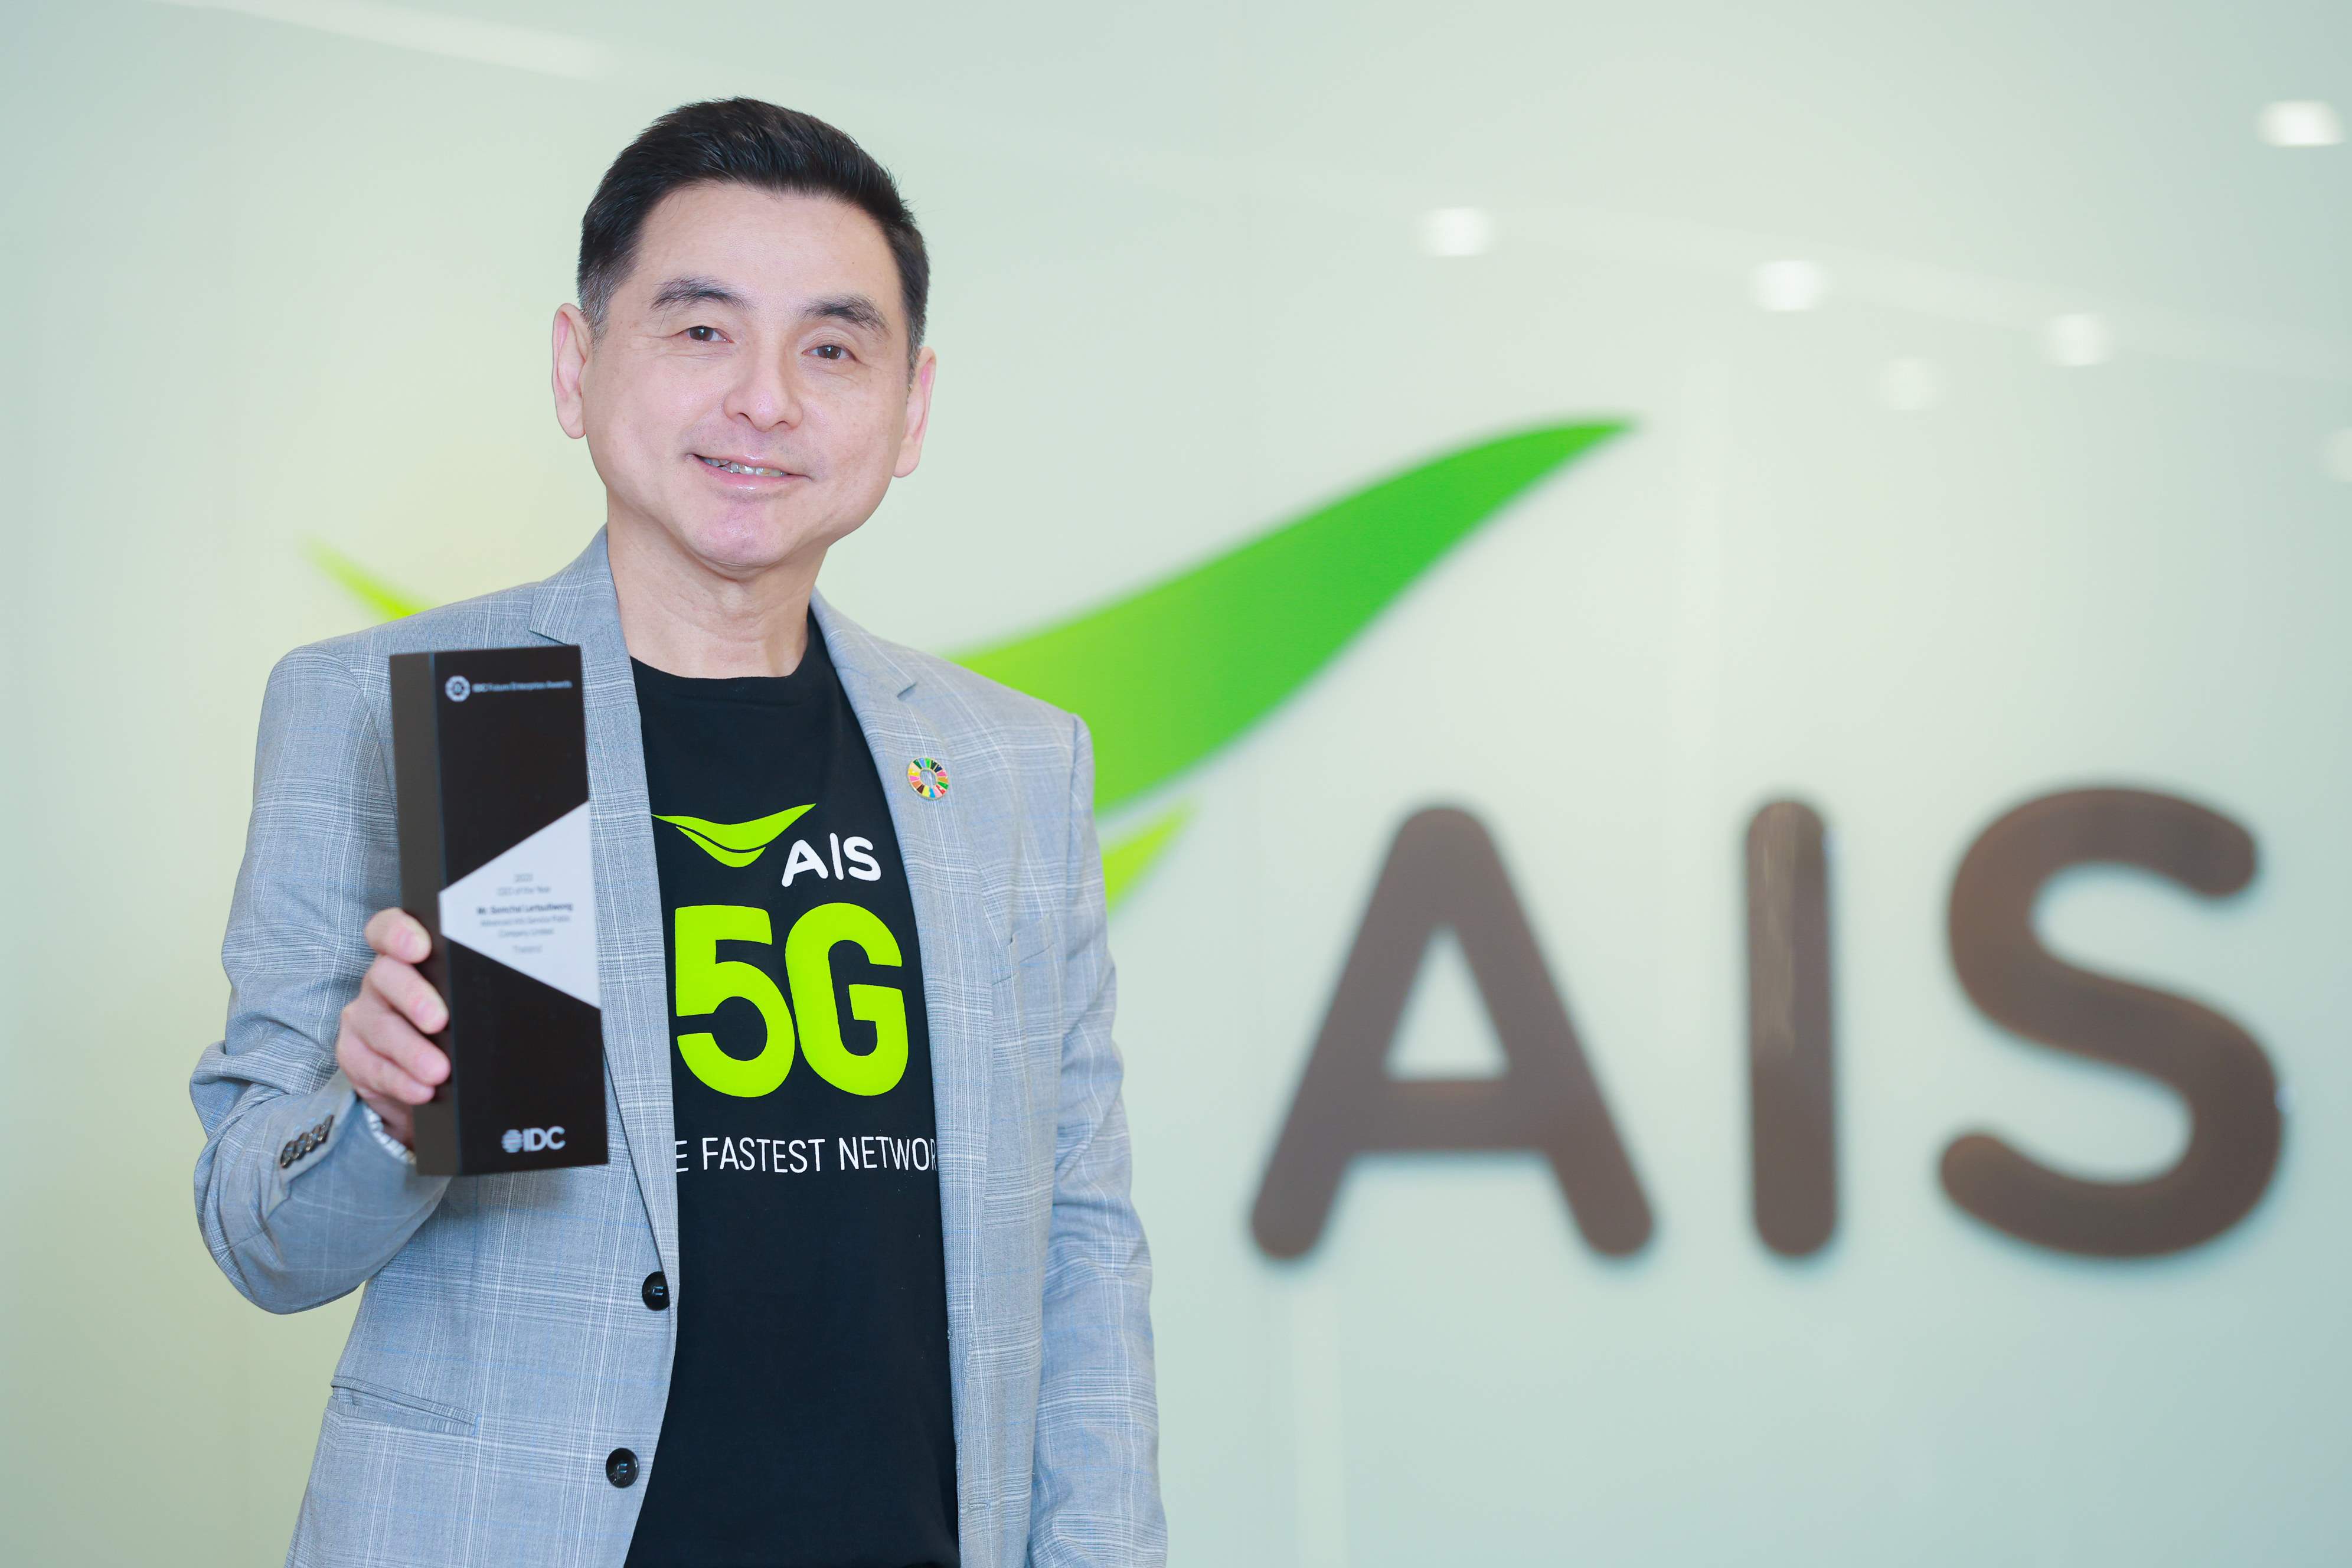 สุดยอด! CEO AIS คว้ารางวัลสุดยอดผู้นำแห่งปี หนึ่งเดียวในไทยจากเวทีระดับเอเชียแปซิฟิก 